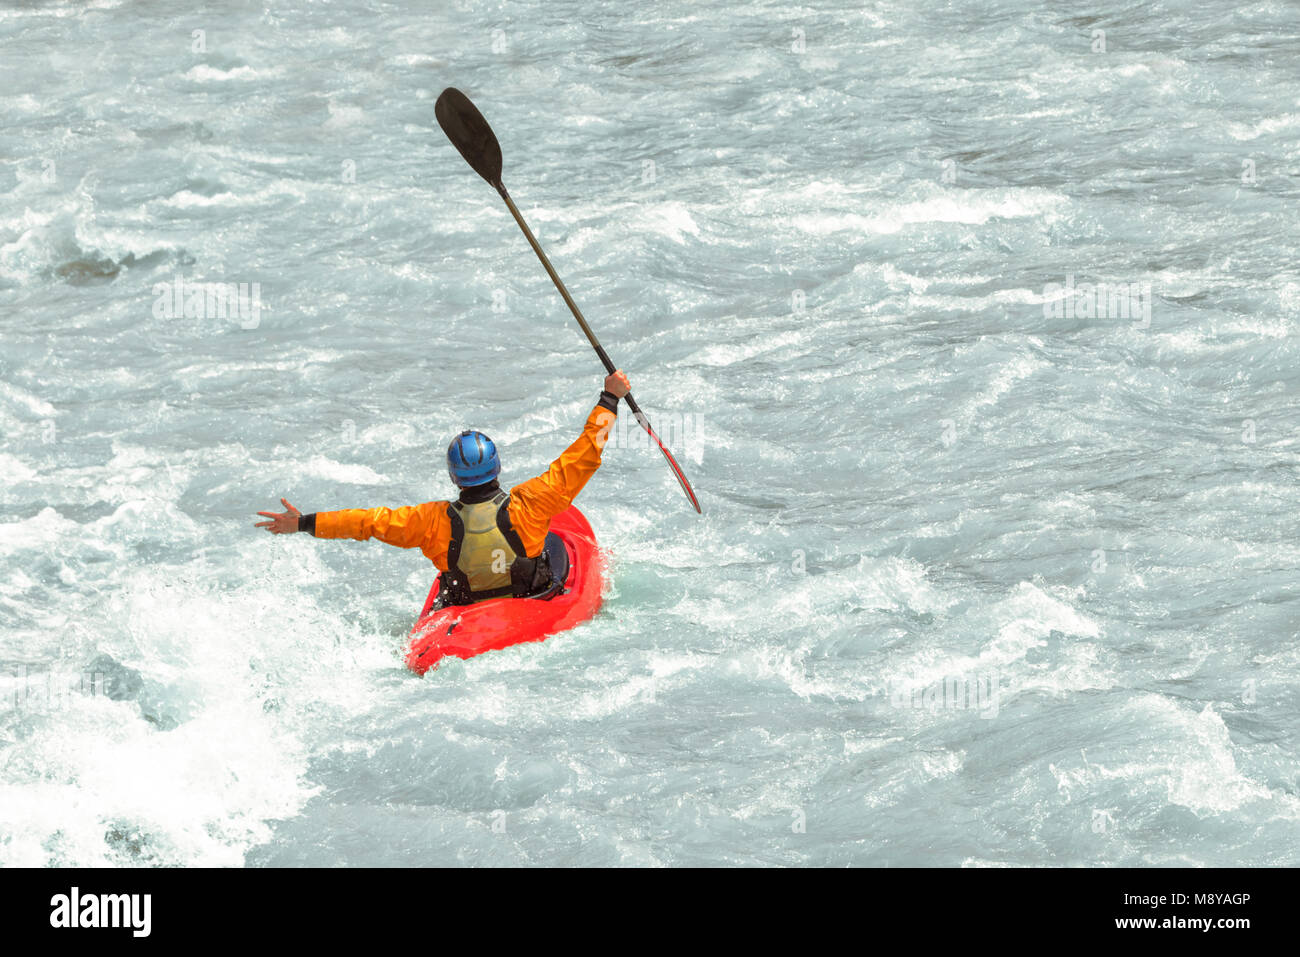 La kayakiste ayant in rapids blancs de l'eau, avec copie espace Banque D'Images